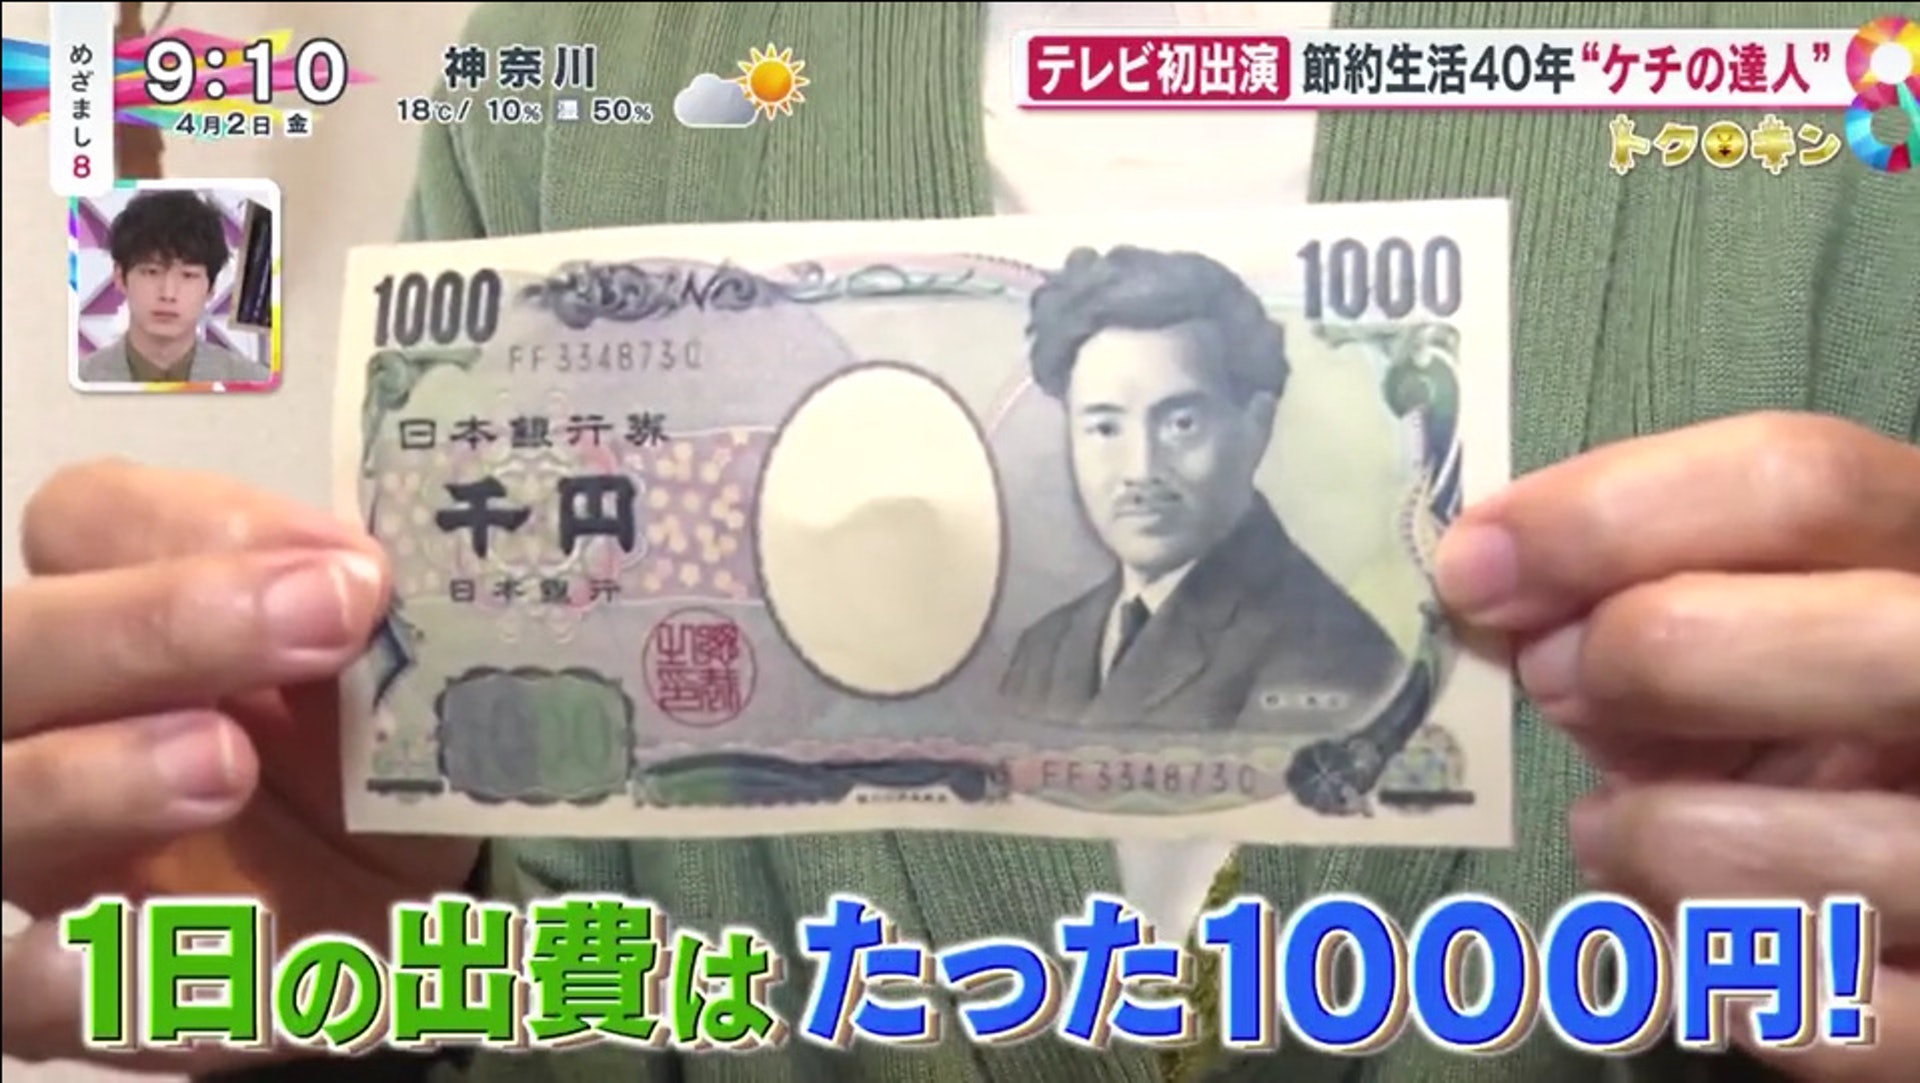 ‘Thiên hạ đệ nhất tiết kiệm’ Nhật Bản: 30 tuổi đã bắt đầu dành tiền nghỉ hưu, chỉ tiêu 160 ngàn đồng/ngày, khuyên 6 chiêu giữ được bộn tiền!- Ảnh 1.